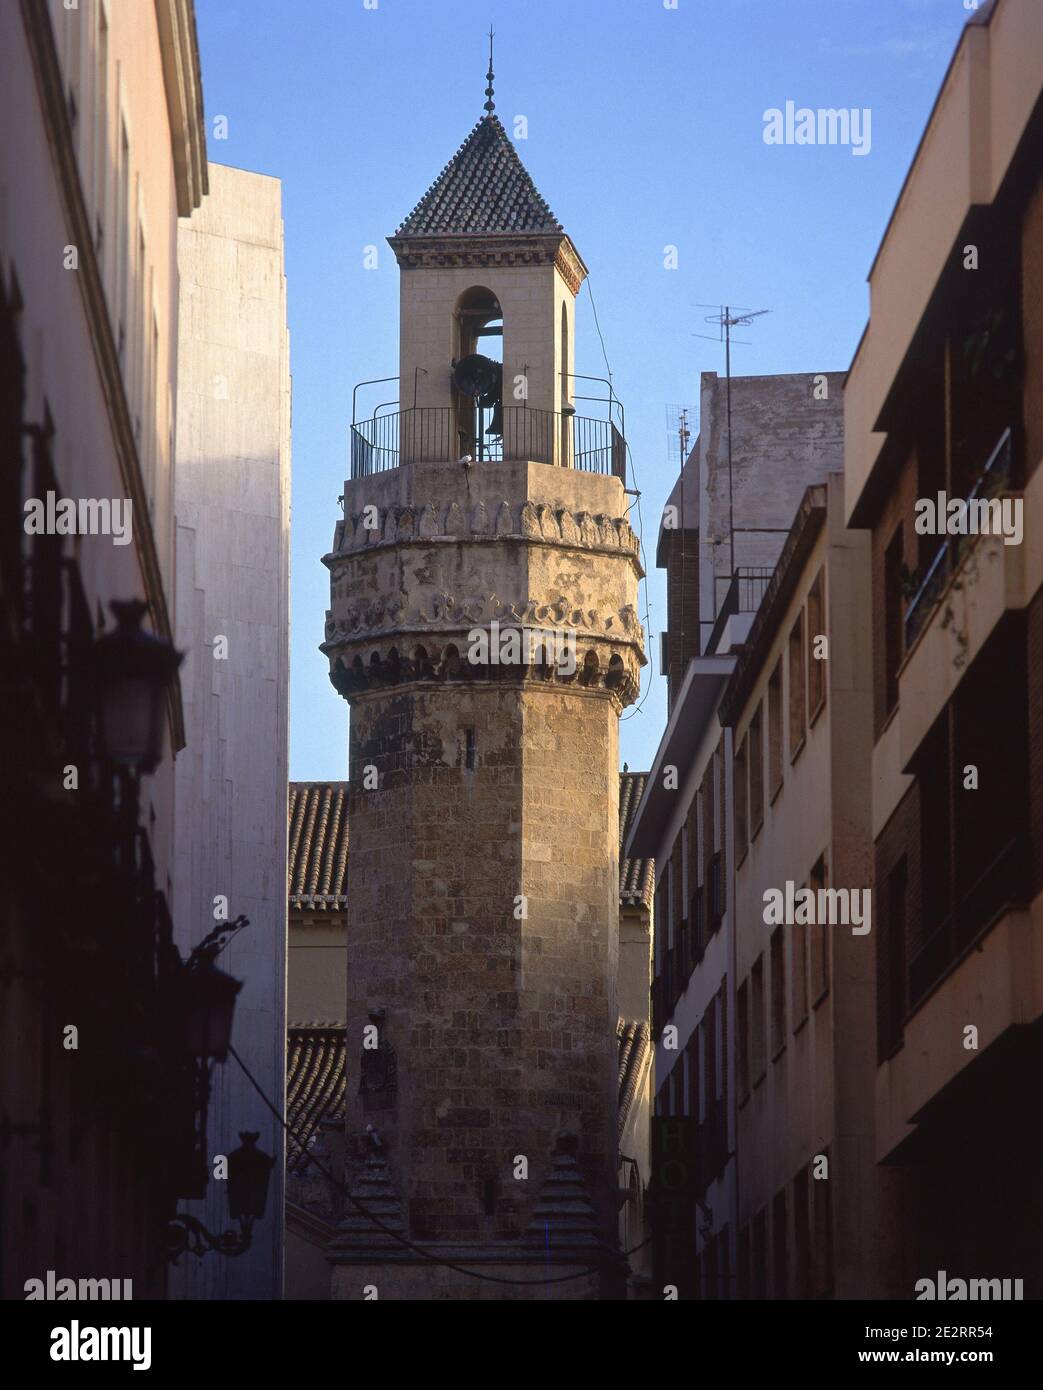 TORRE DE LA IGLESIA- ANTIGUO ALMINAR- S XIII-XV - CAMPANIL DEL S XVIII. Location: ST. NICHOLAS CHURCH. CORDOBA. SPAIN. Stock Photo